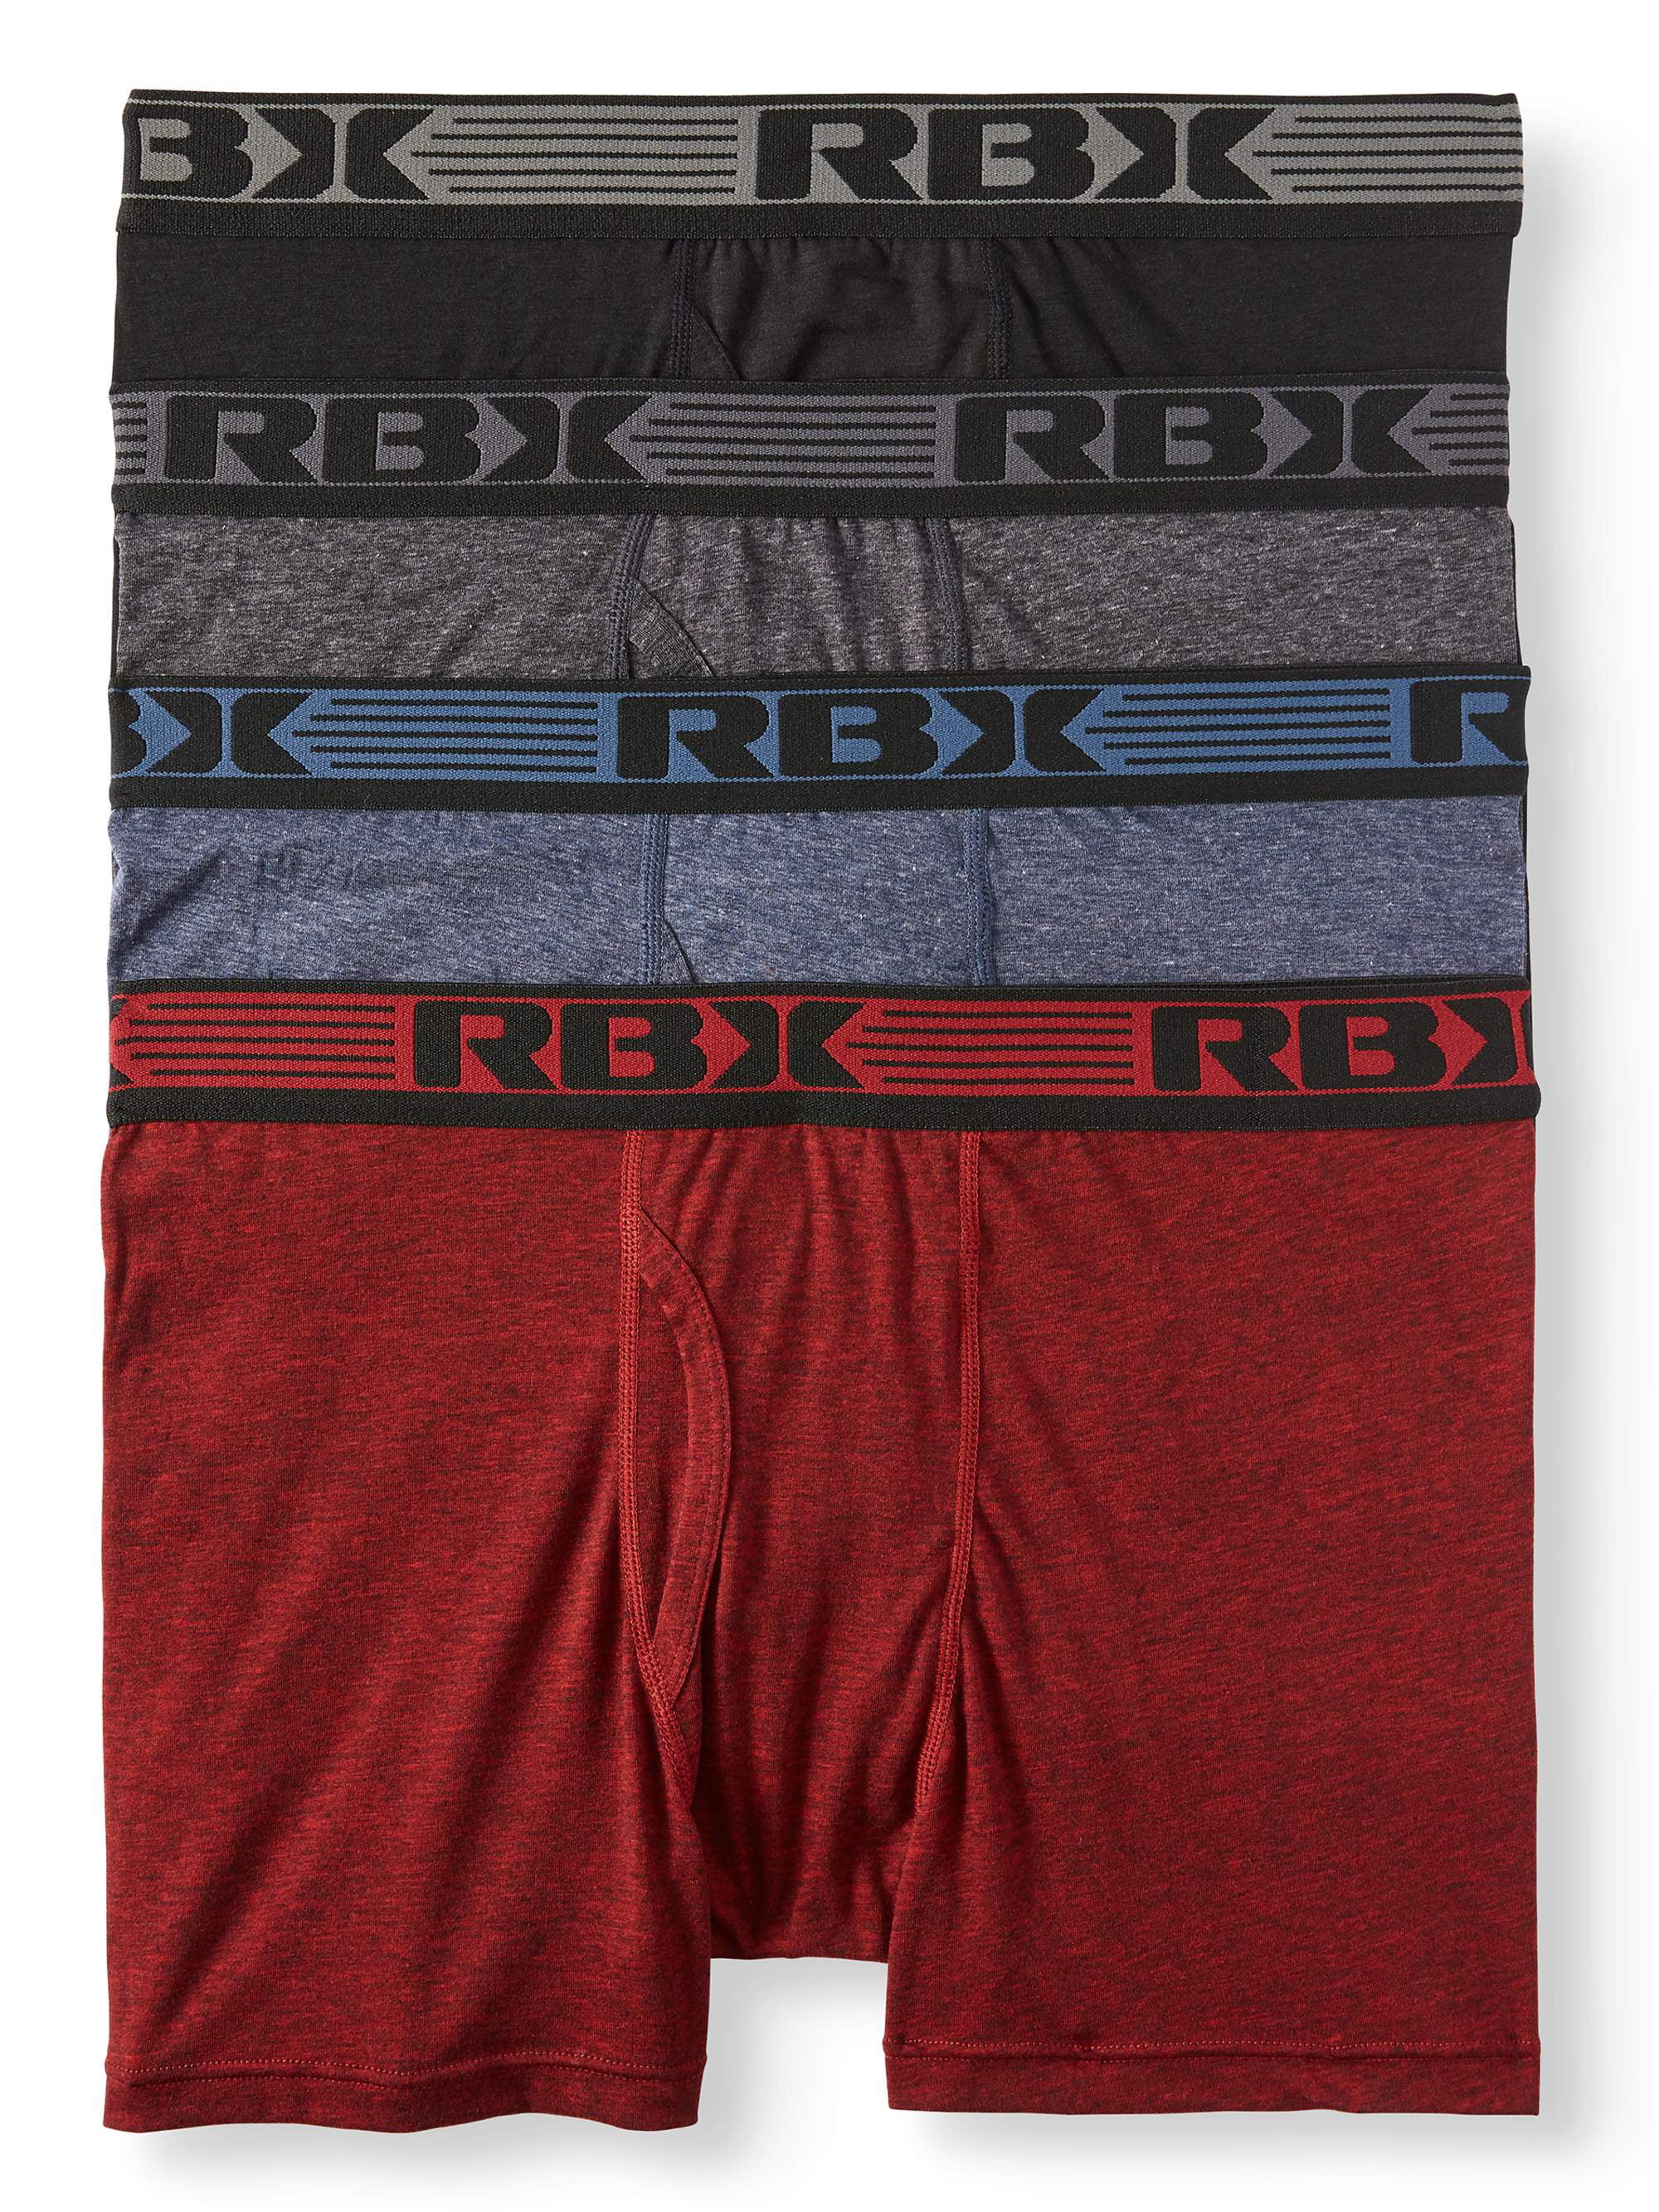 RBX Men's Cotton Stretch Boxer Briefs, 4-Pack - Walmart.com